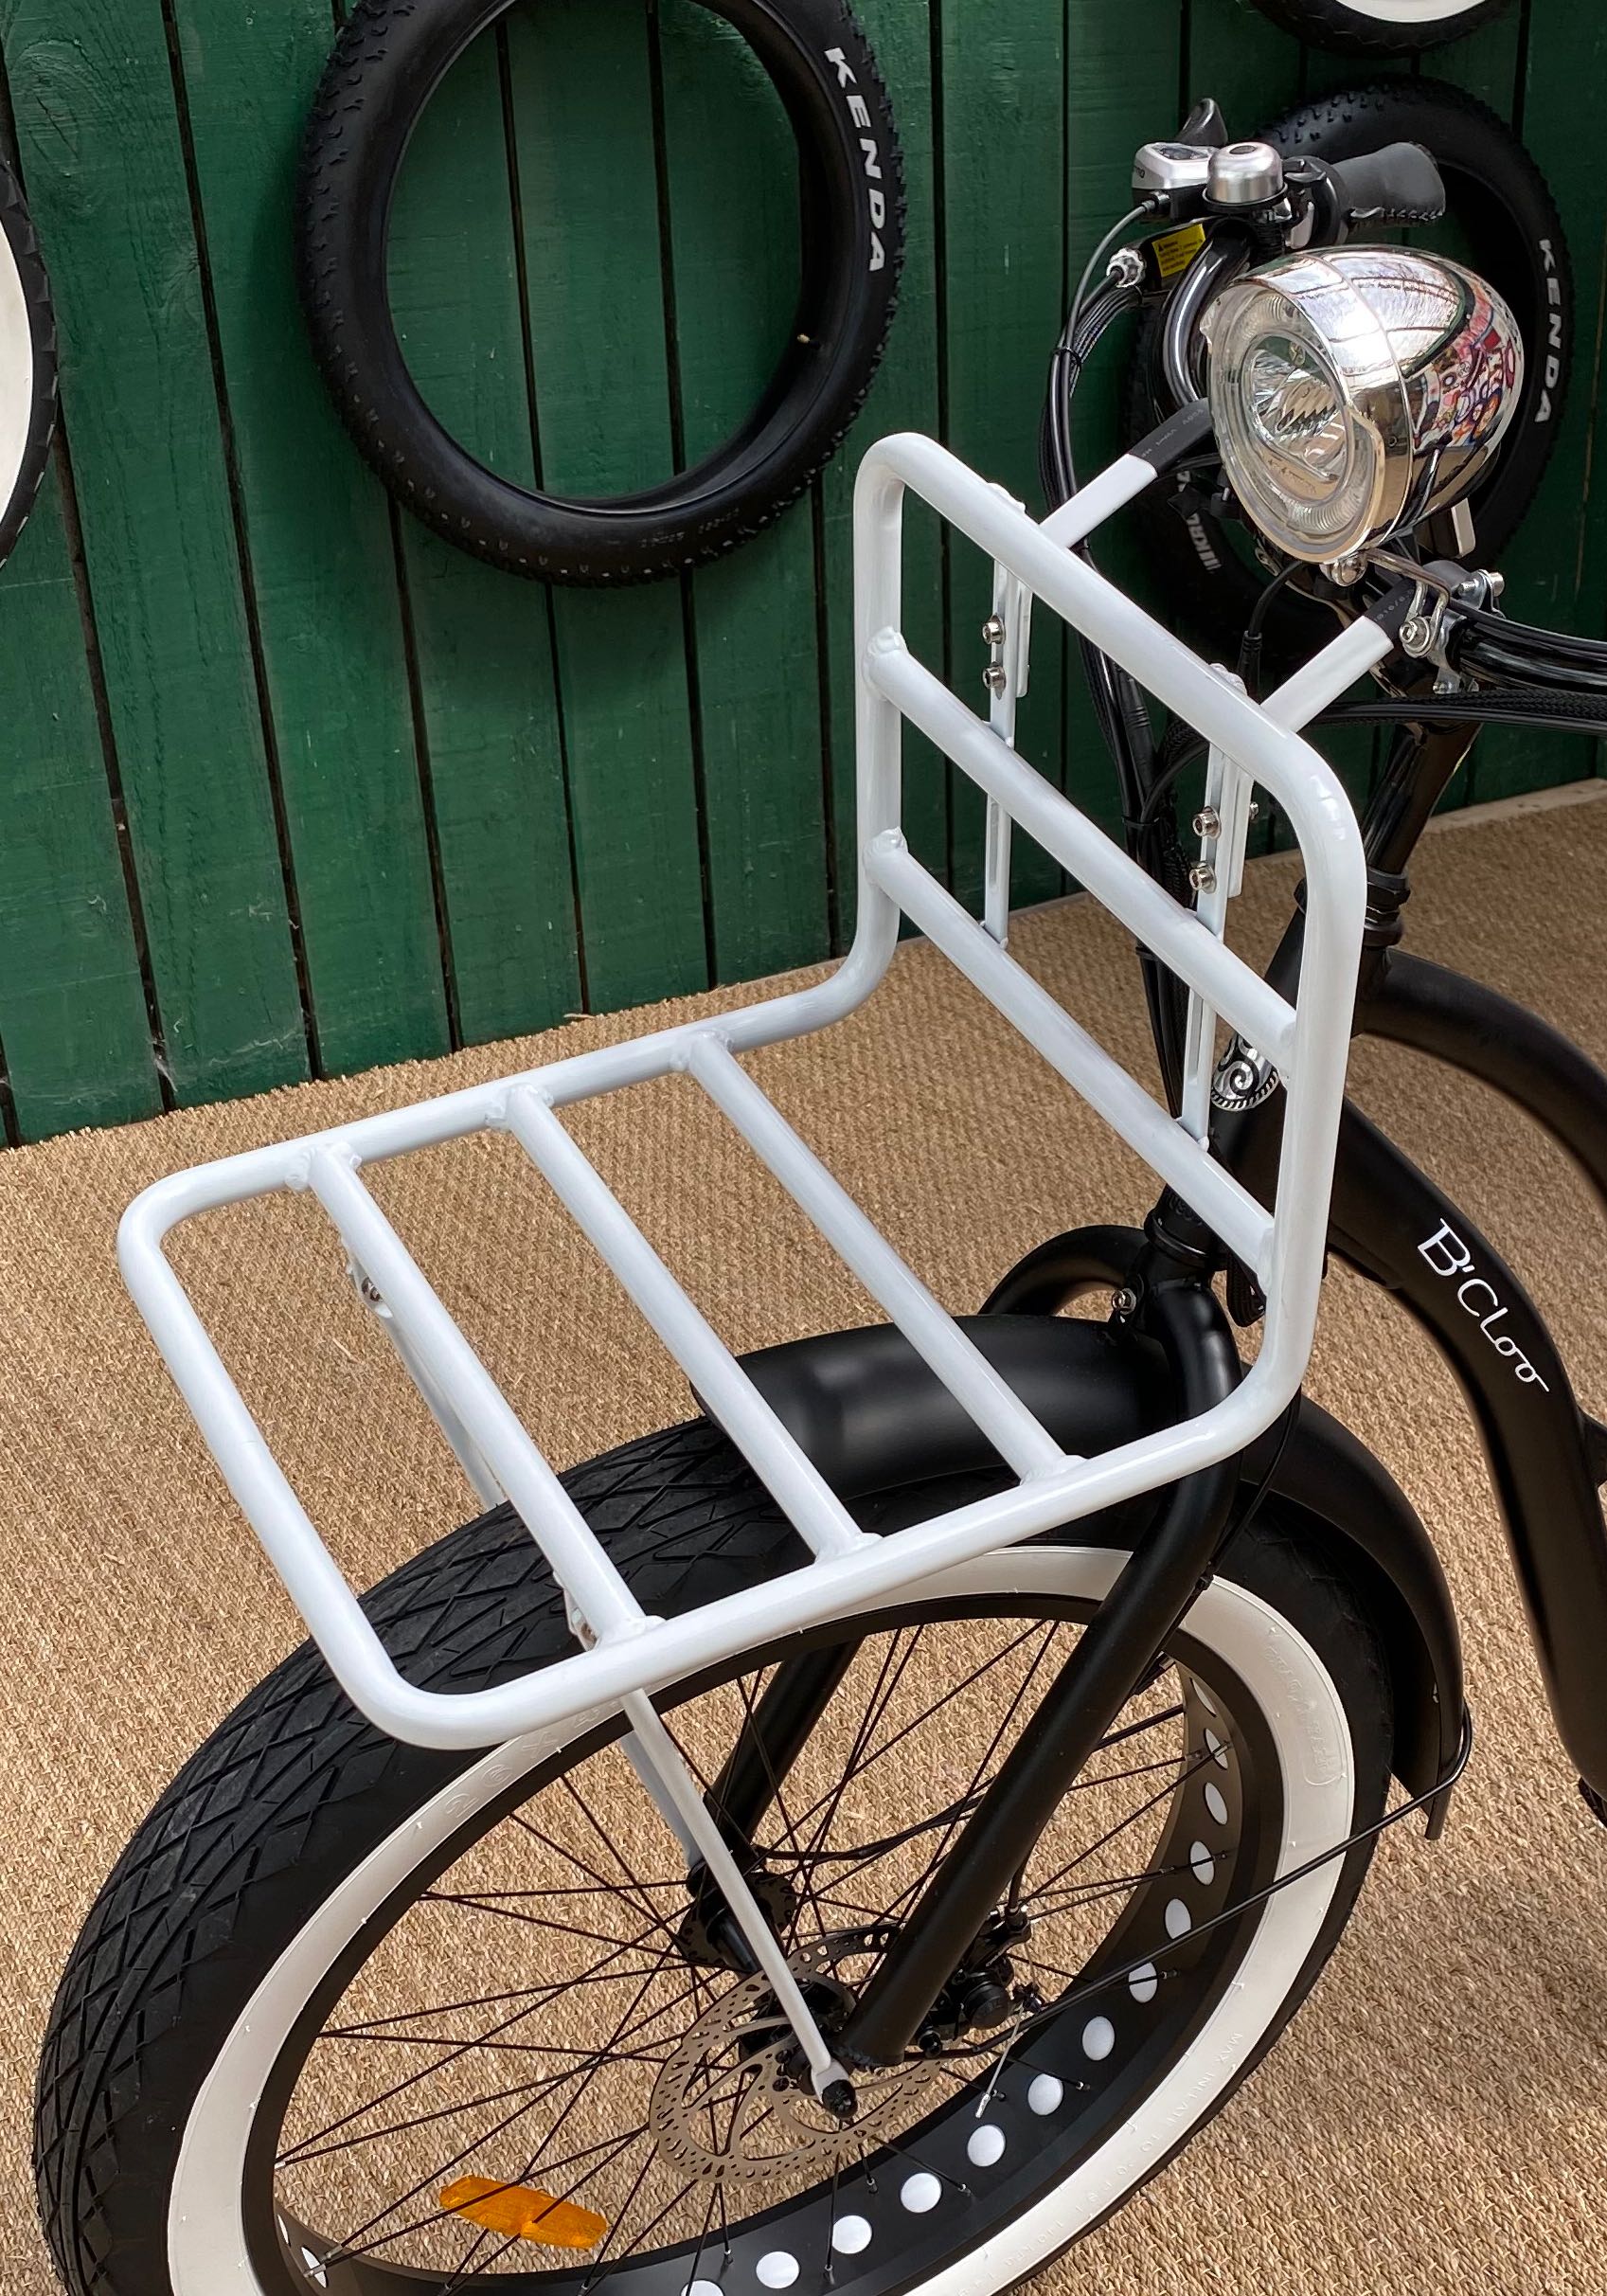 Fat bike vélo bicycle bike tout terrain électrique assistance location vente bouboubicloo b’cloo fait main porte bagage paquets roue avant